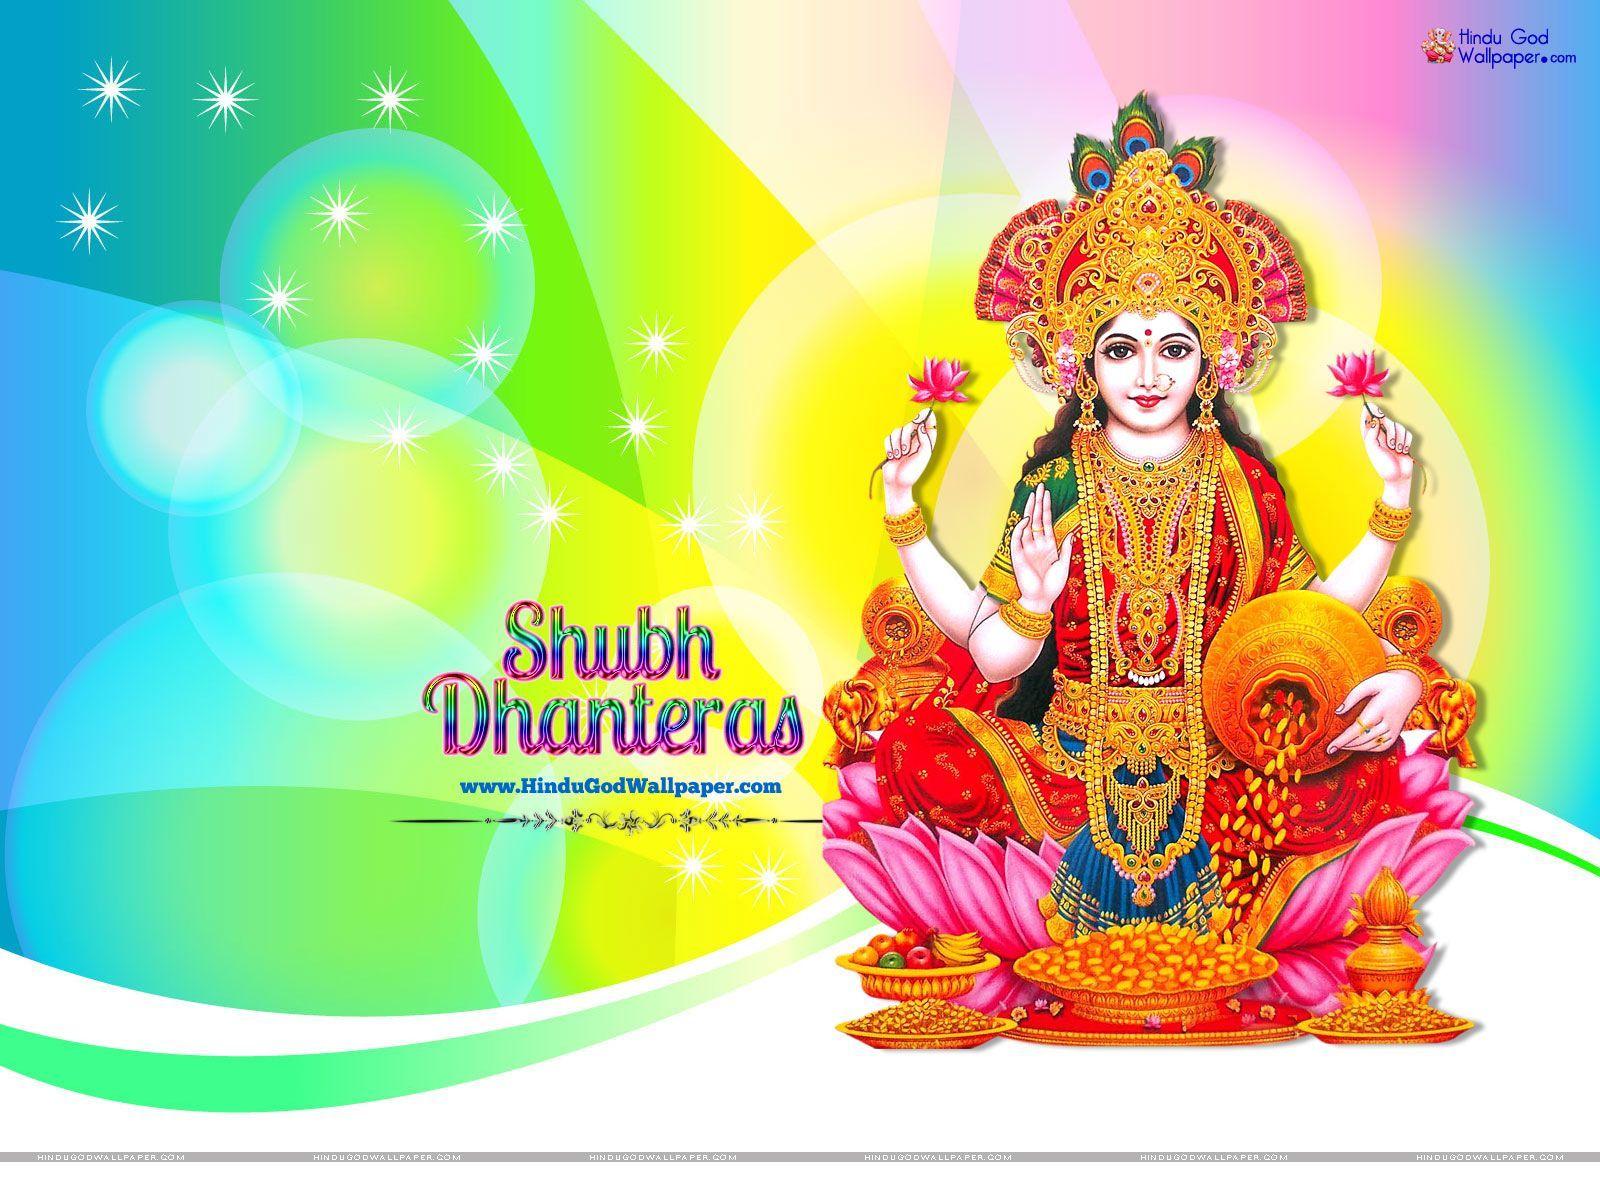 Shubh Dhanteras Wallpaper & Image Free Download. Dhanteras